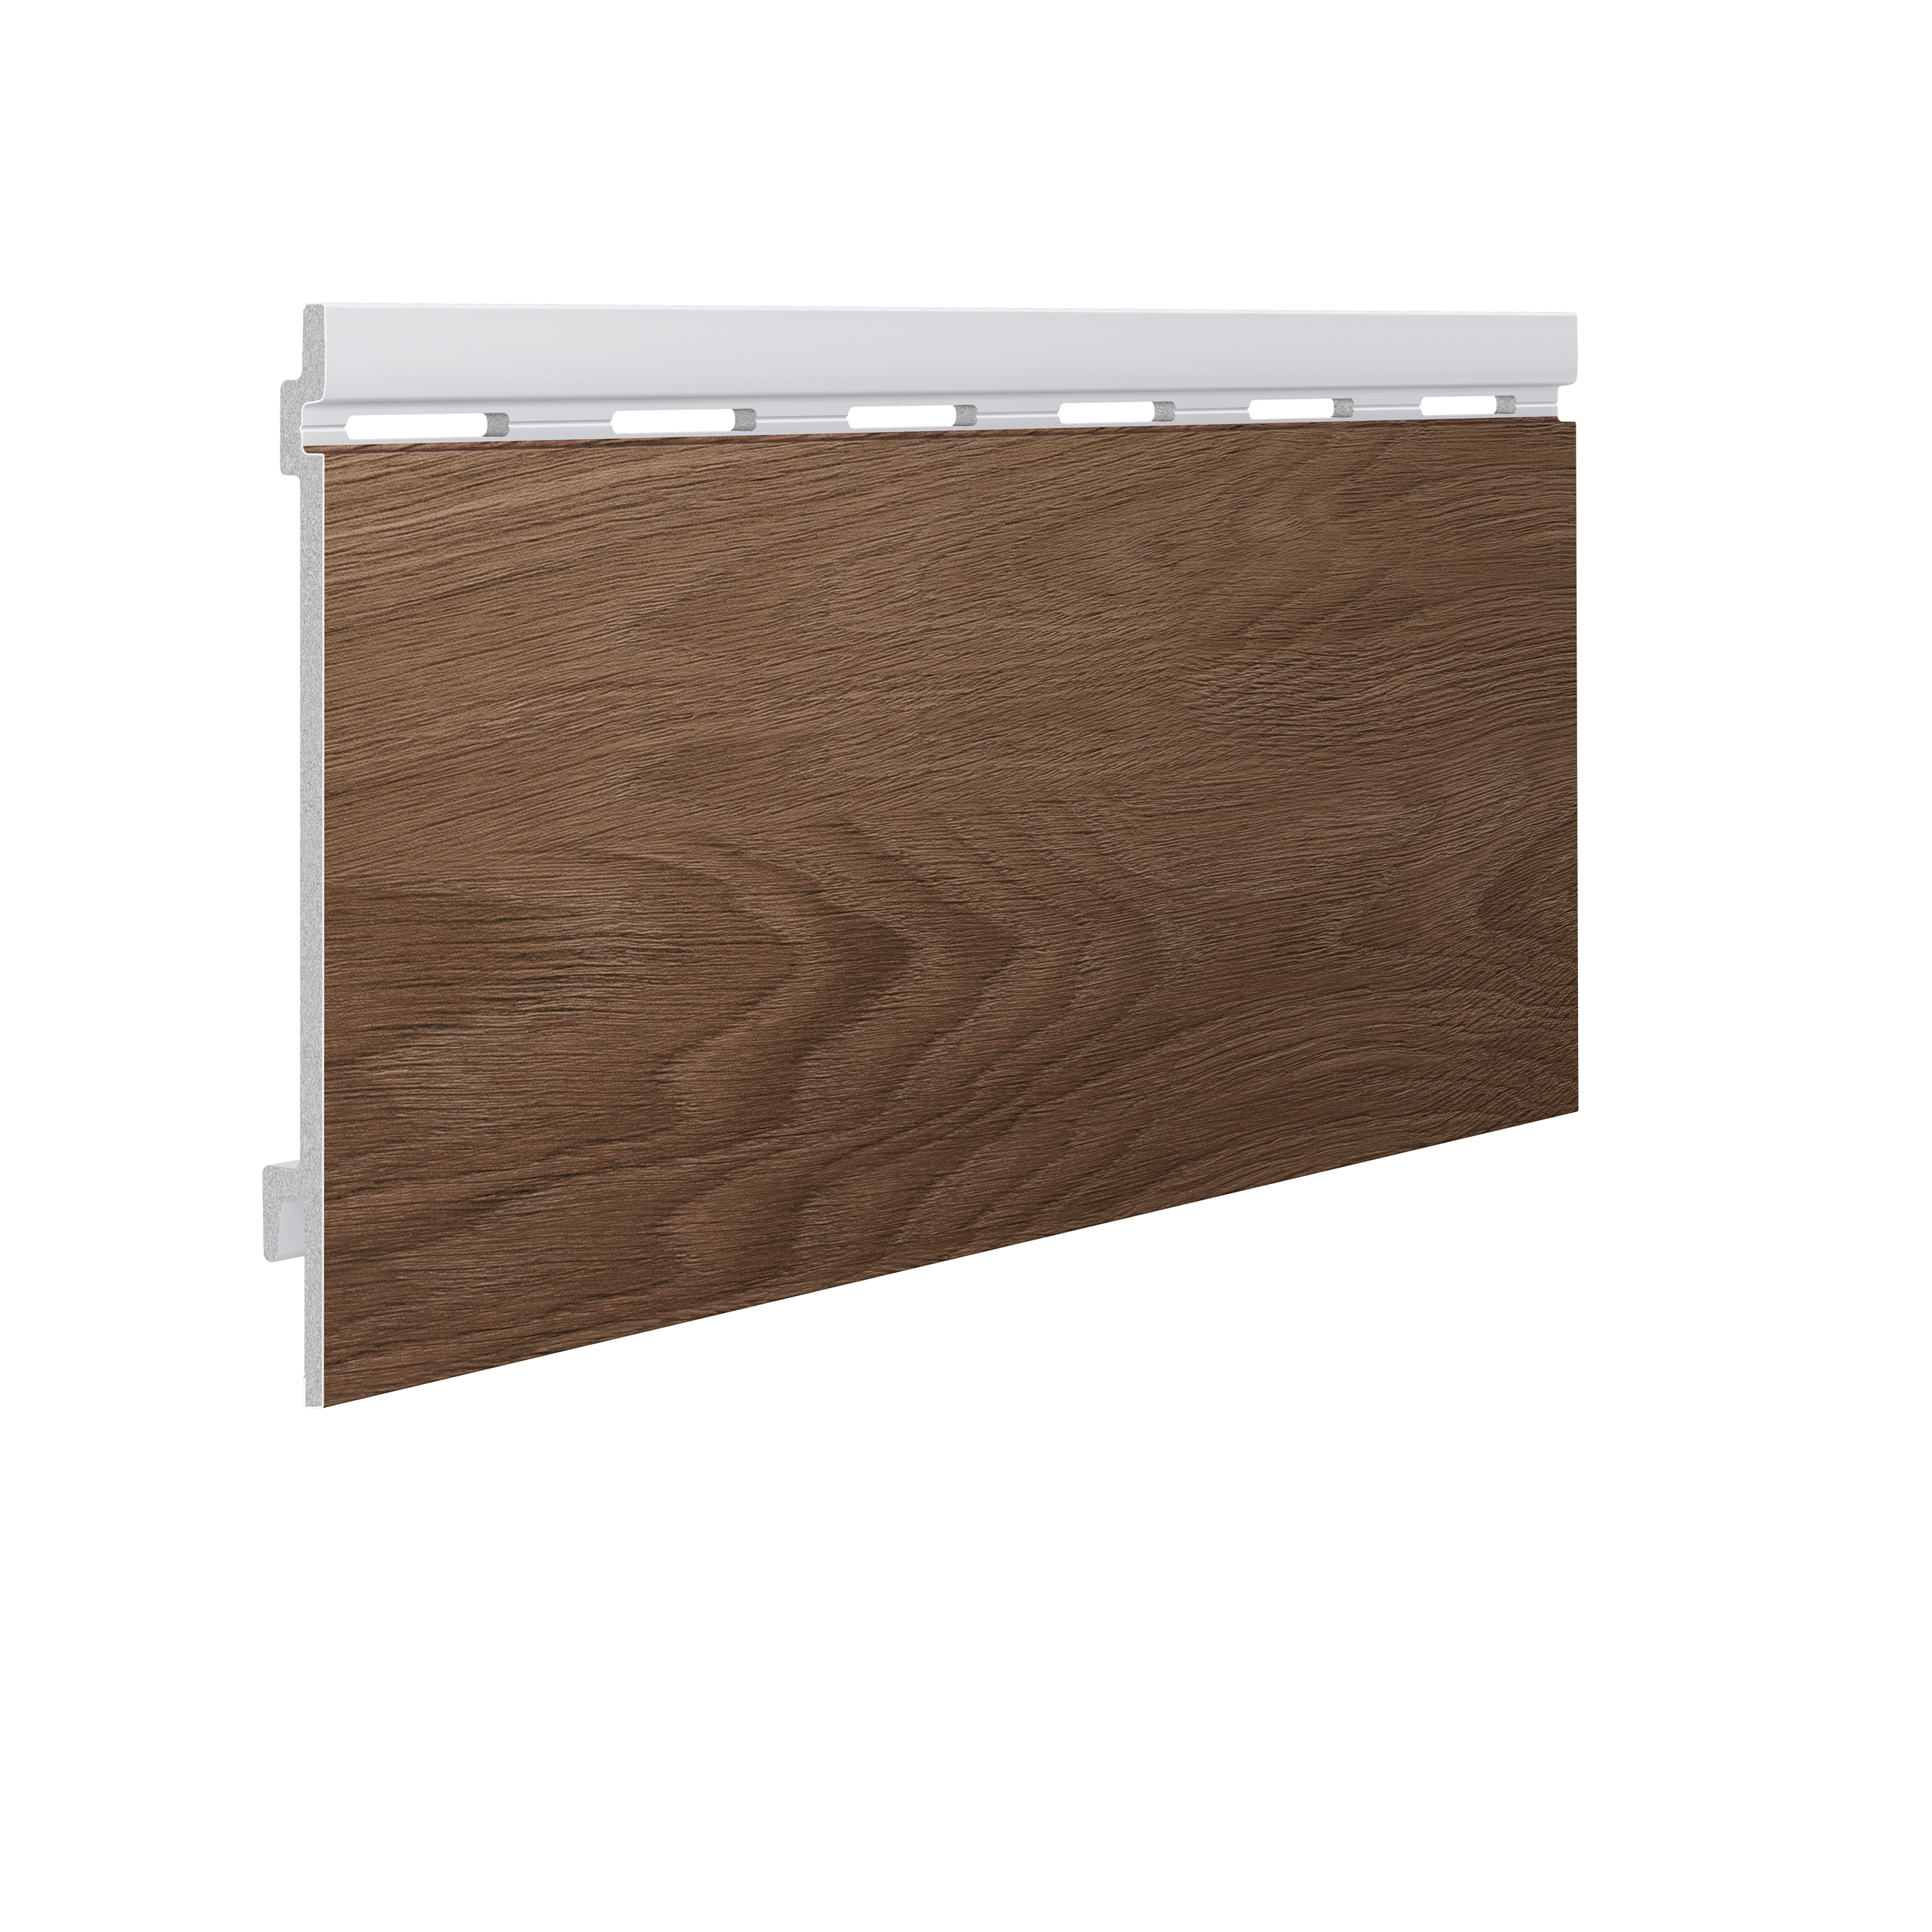 Фасадная система Kerrafront, Wood Effect, Caramel Oak, панель одинарная